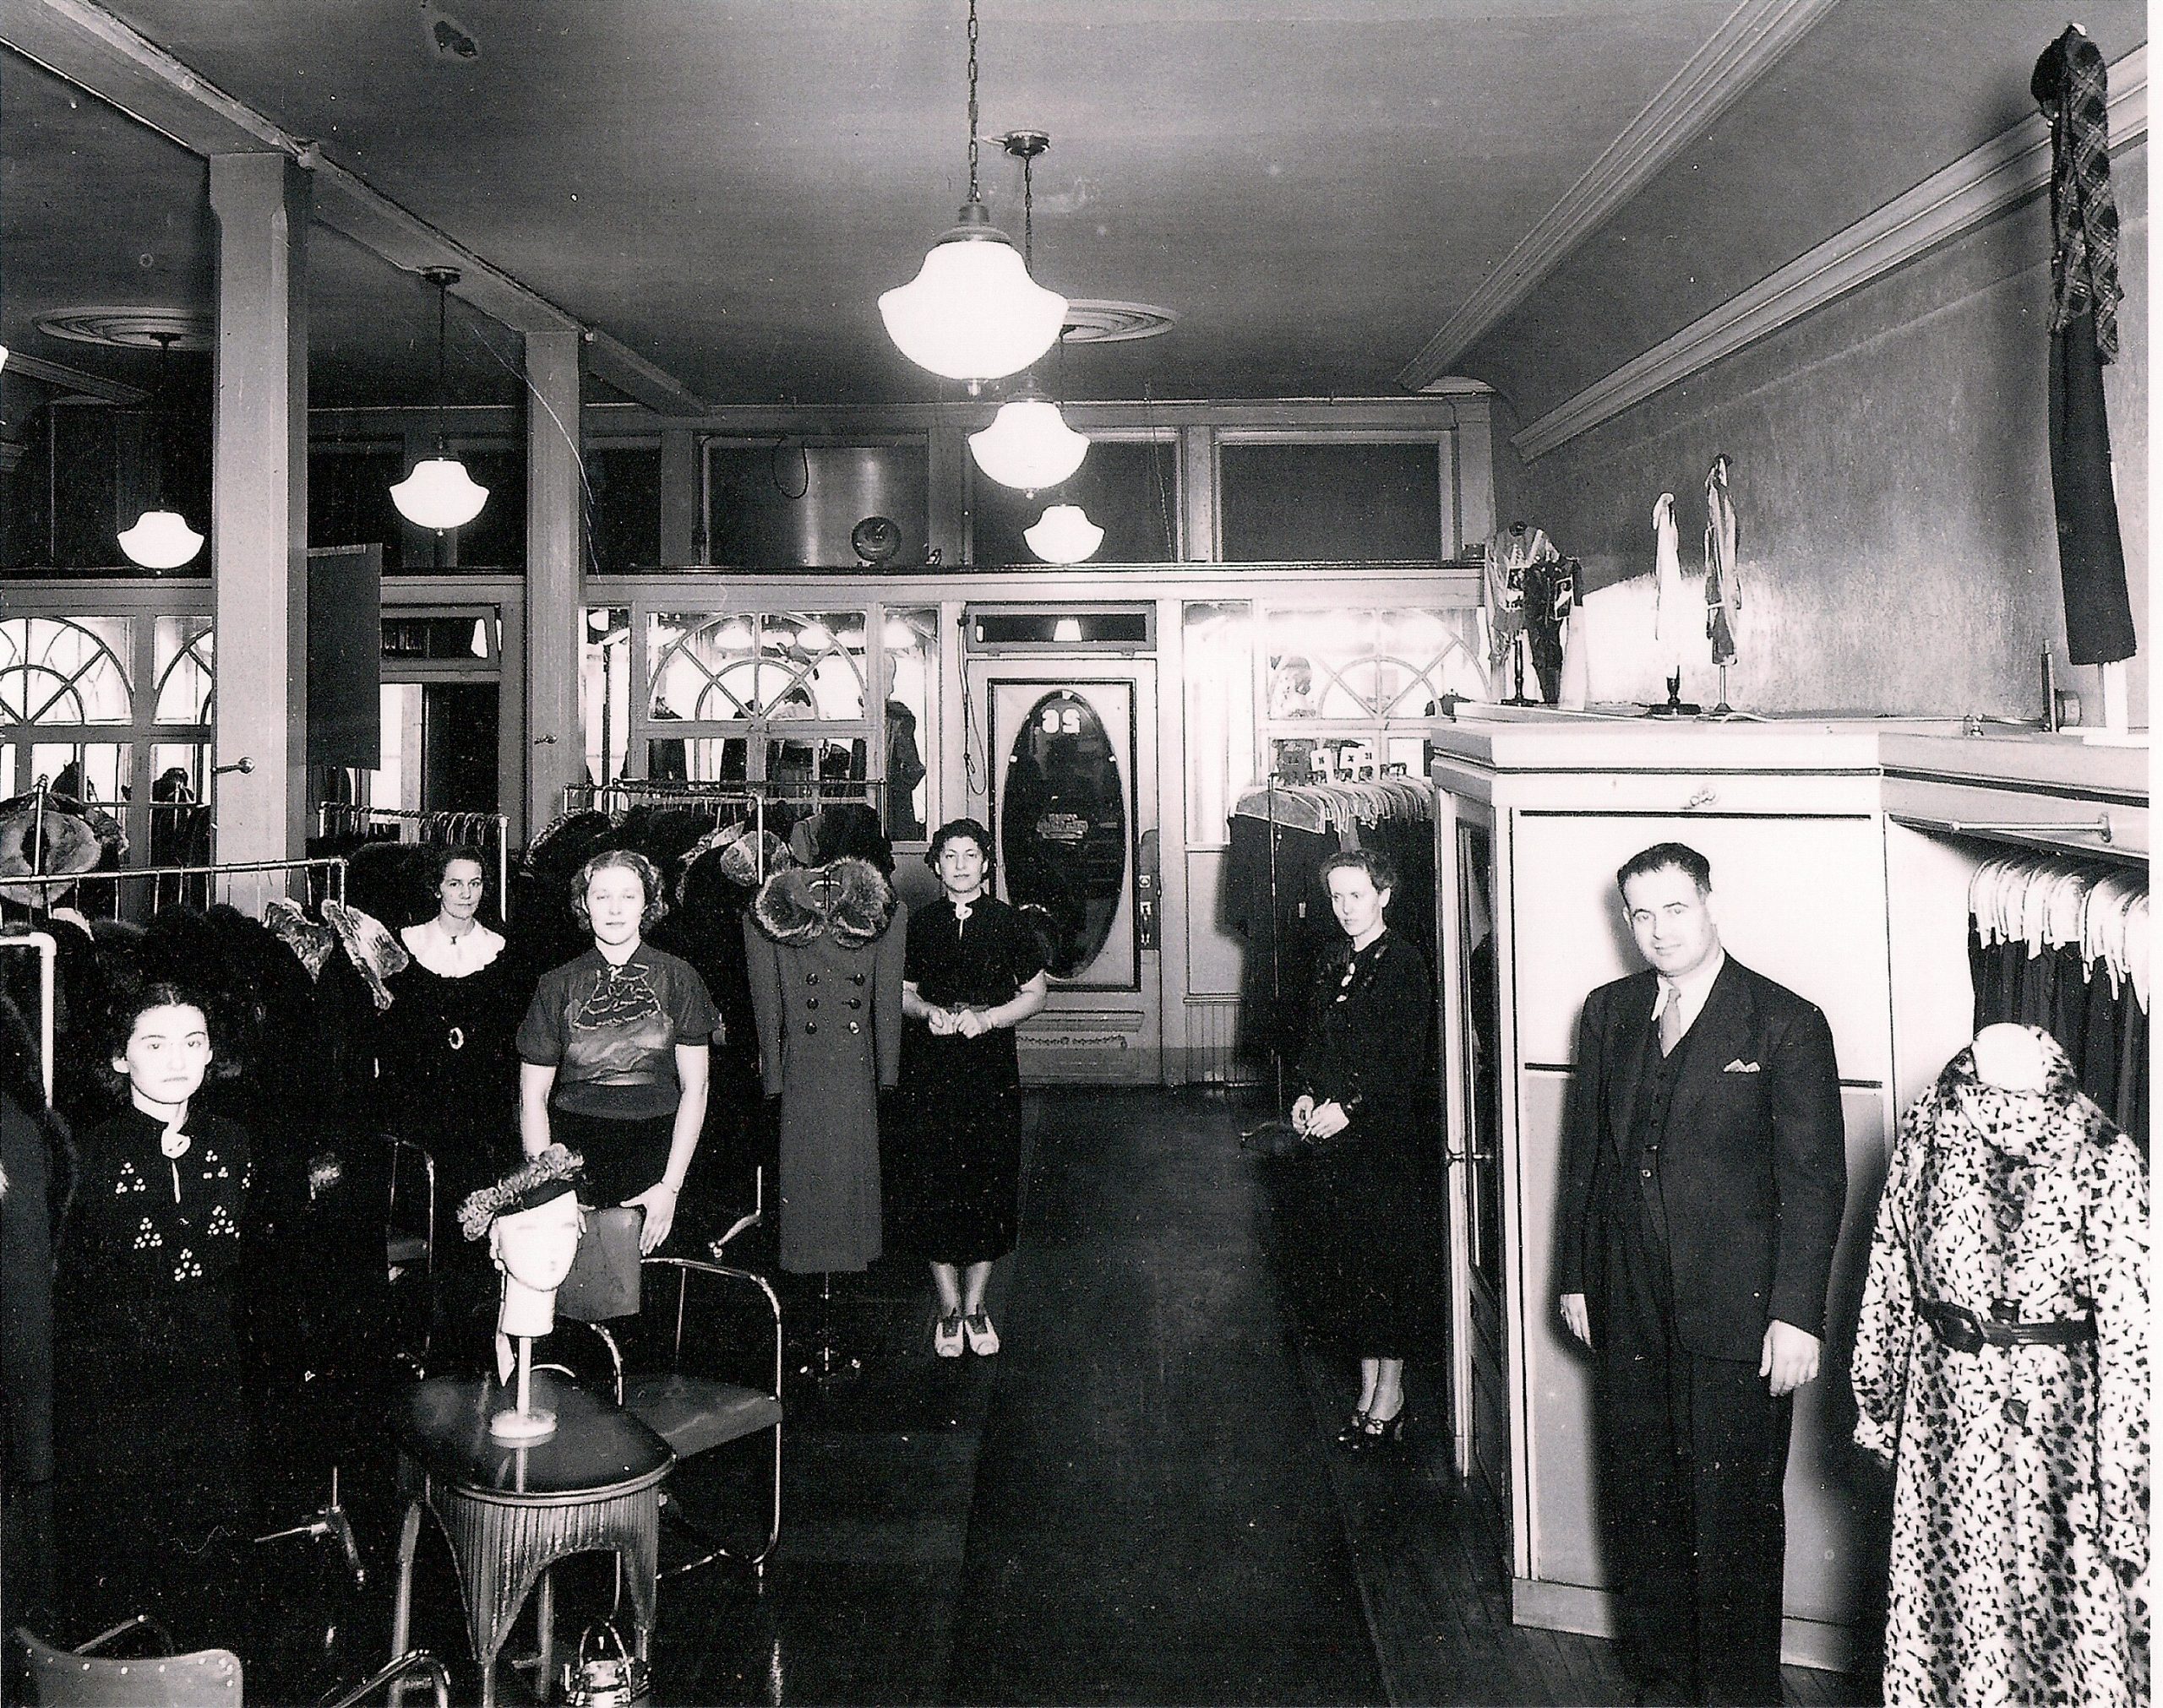 Quatre vendeuses et un homme à l’intérieur d’un magasin de vêtements pour femmes. Des robes et des manteaux sont disposés sur des présentoirs à gauche.